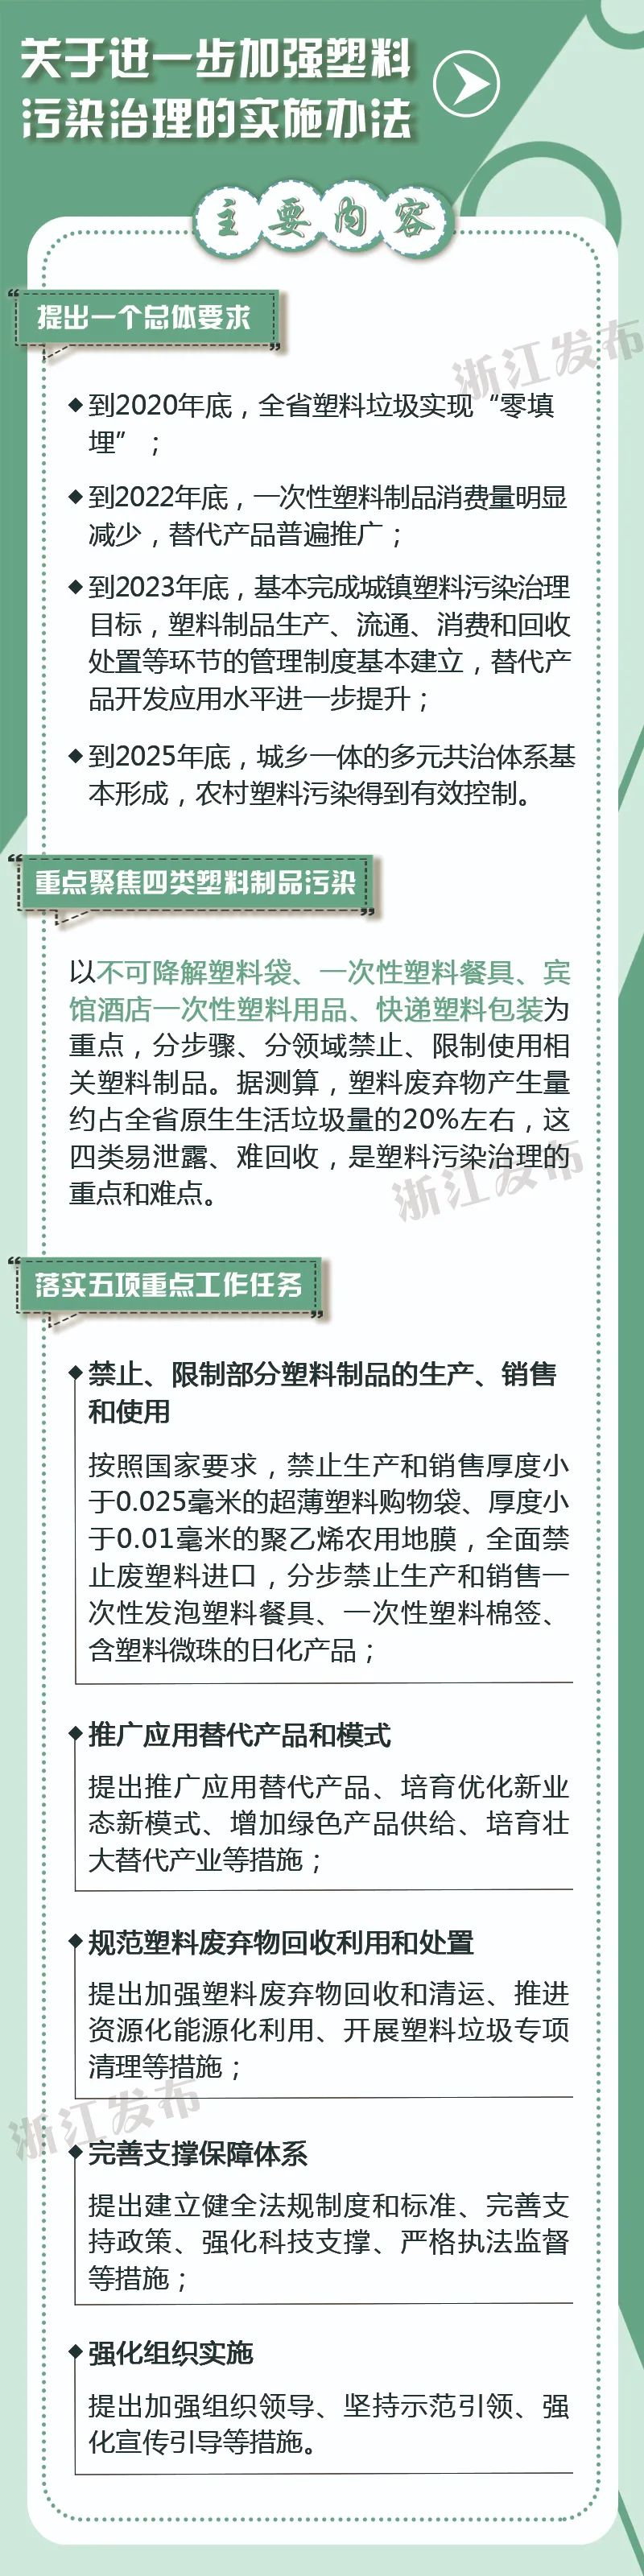 浙江省加强塑料污染治理工作青海环保公司